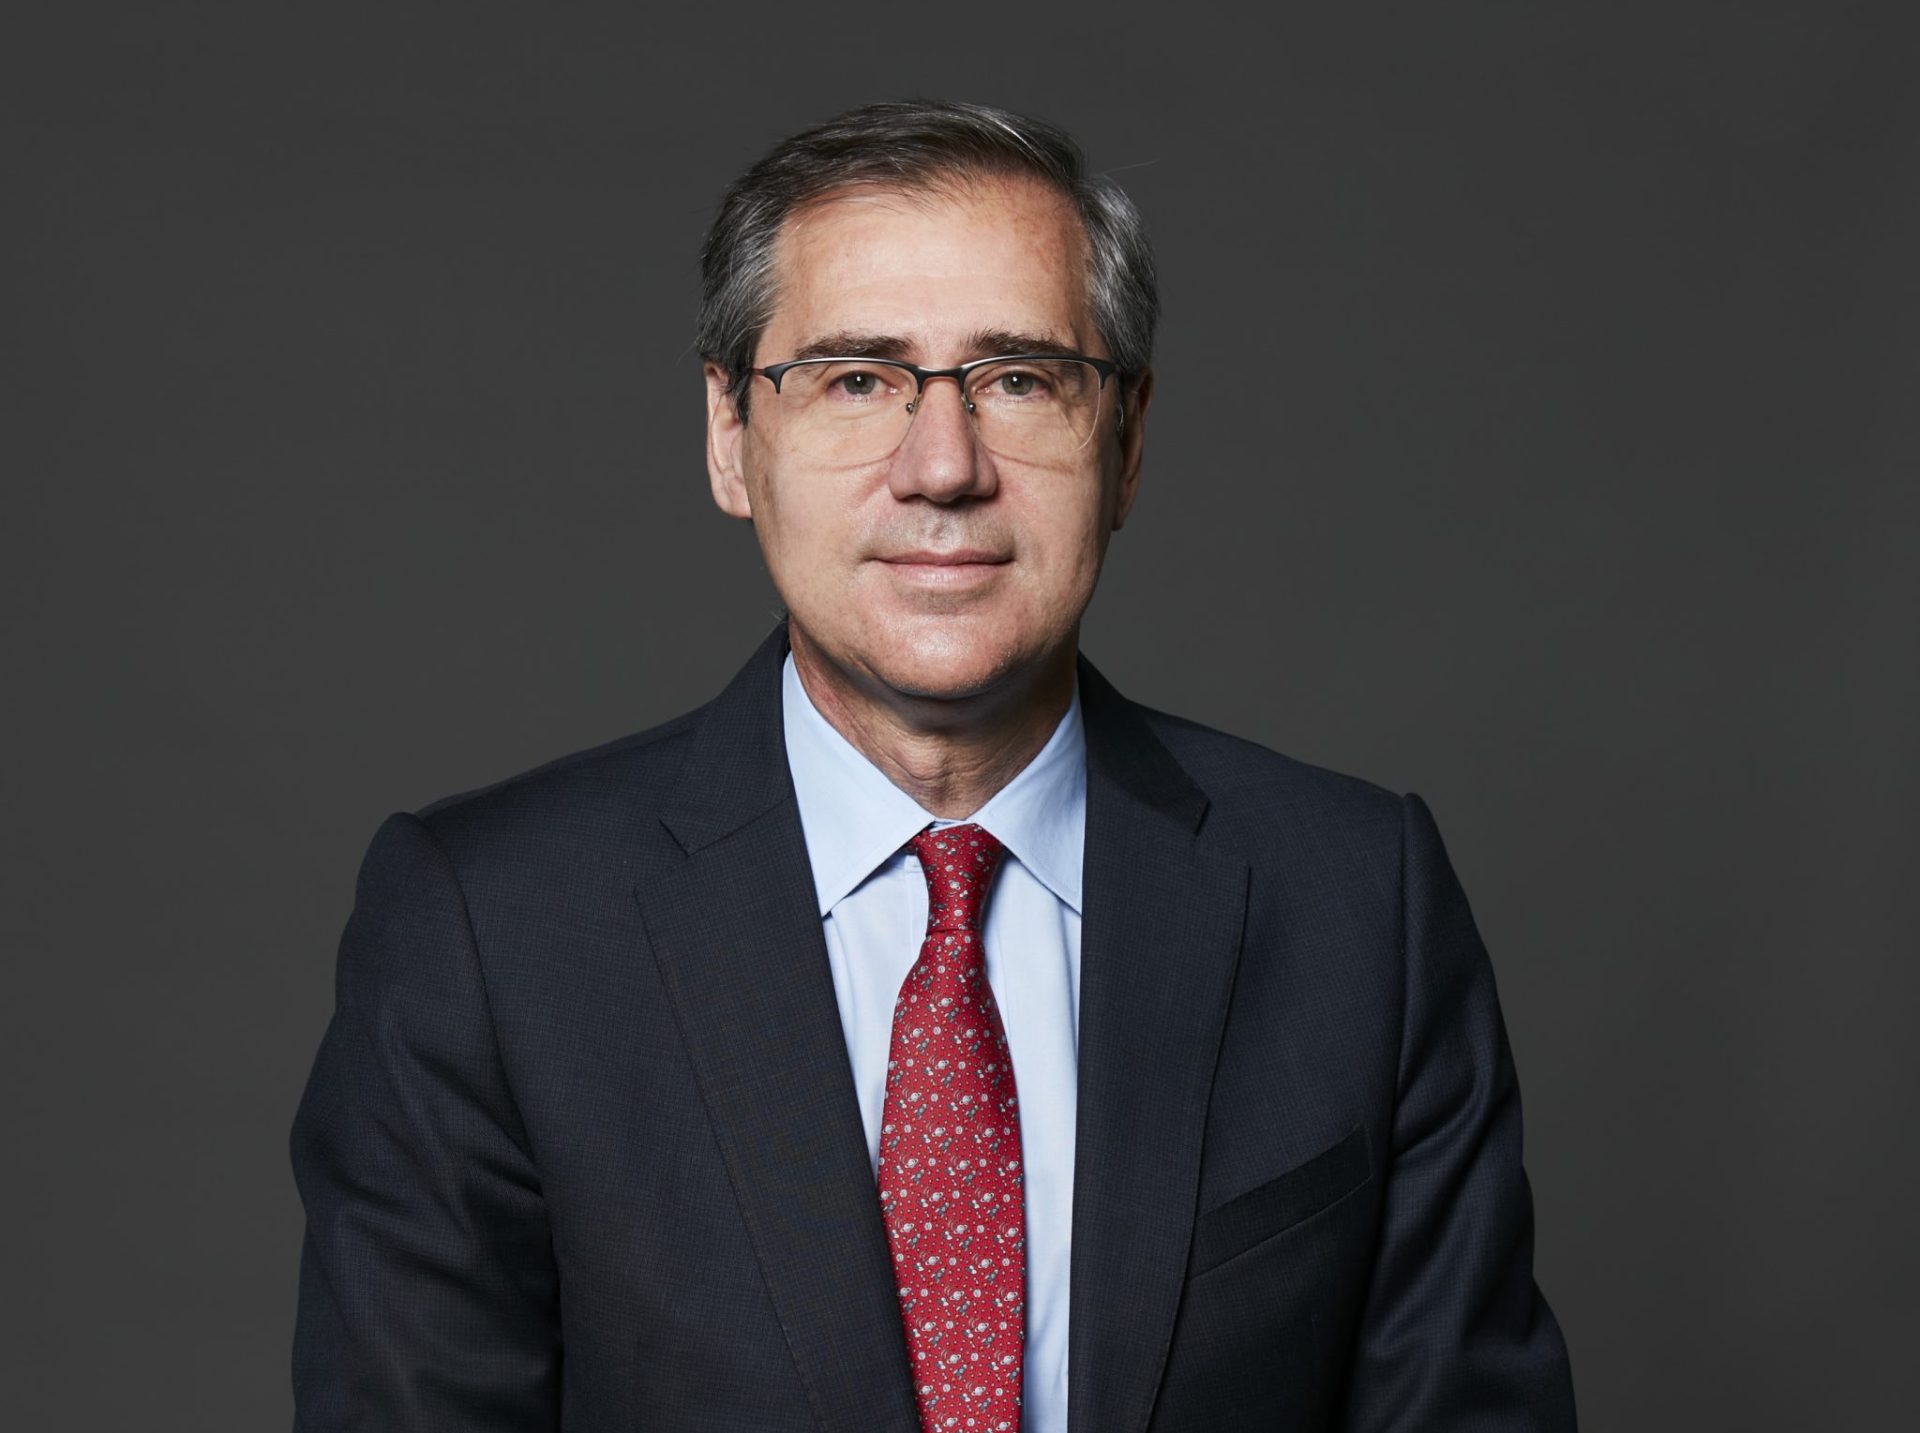 Ignacio-Madridejos-CEO-Ferrovial